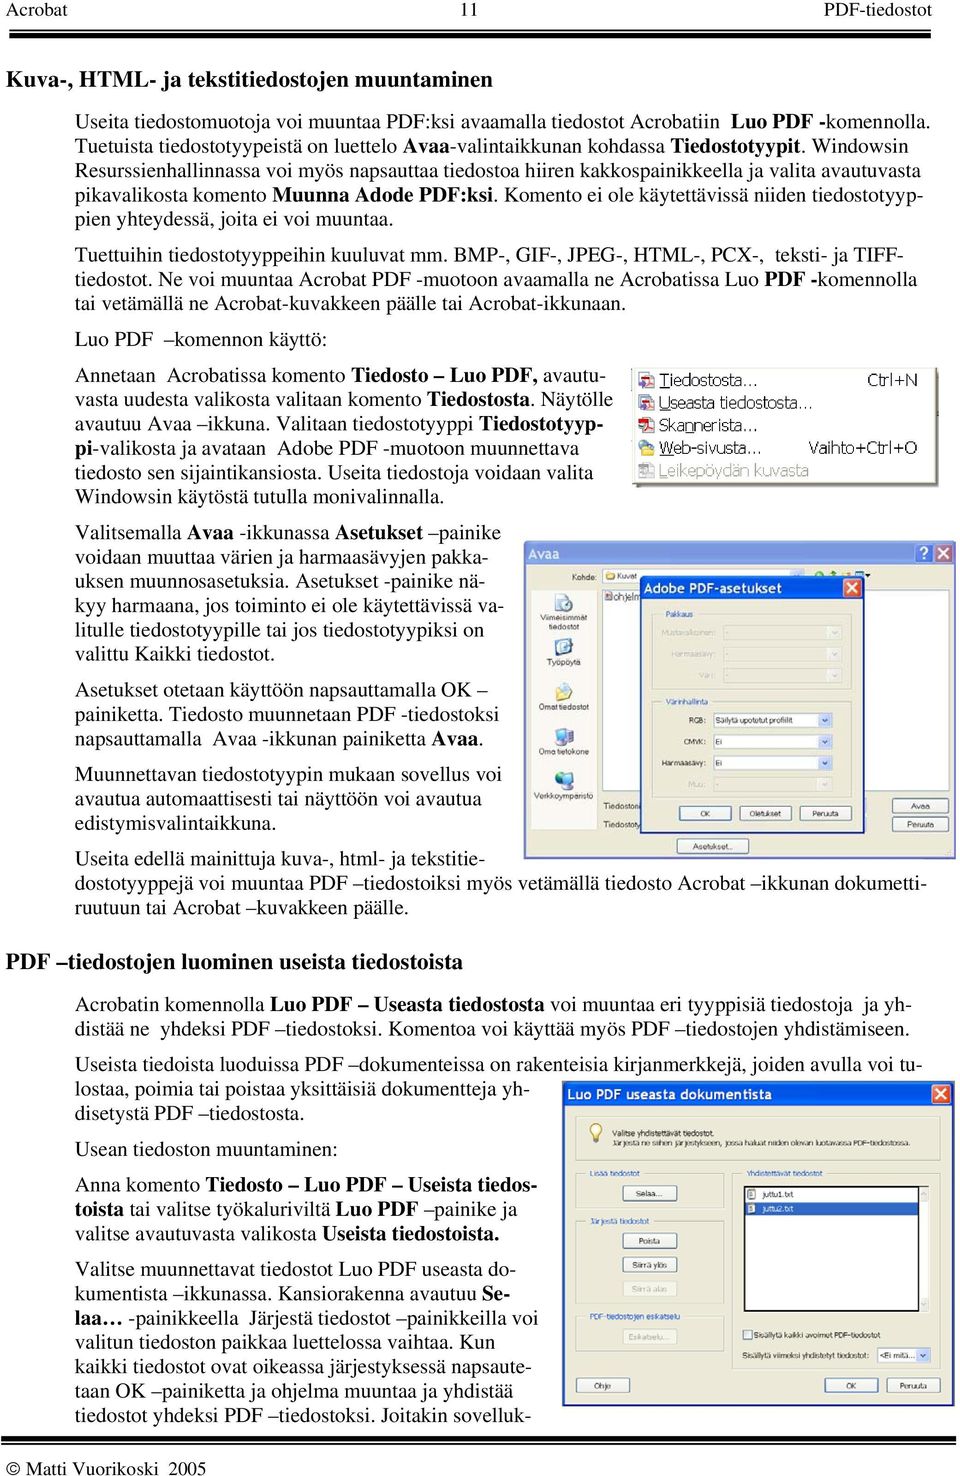 Windowsin Resurssienhallinnassa voi myös napsauttaa tiedostoa hiiren kakkospainikkeella ja valita avautuvasta pikavalikosta komento Muunna Adode PDF:ksi.